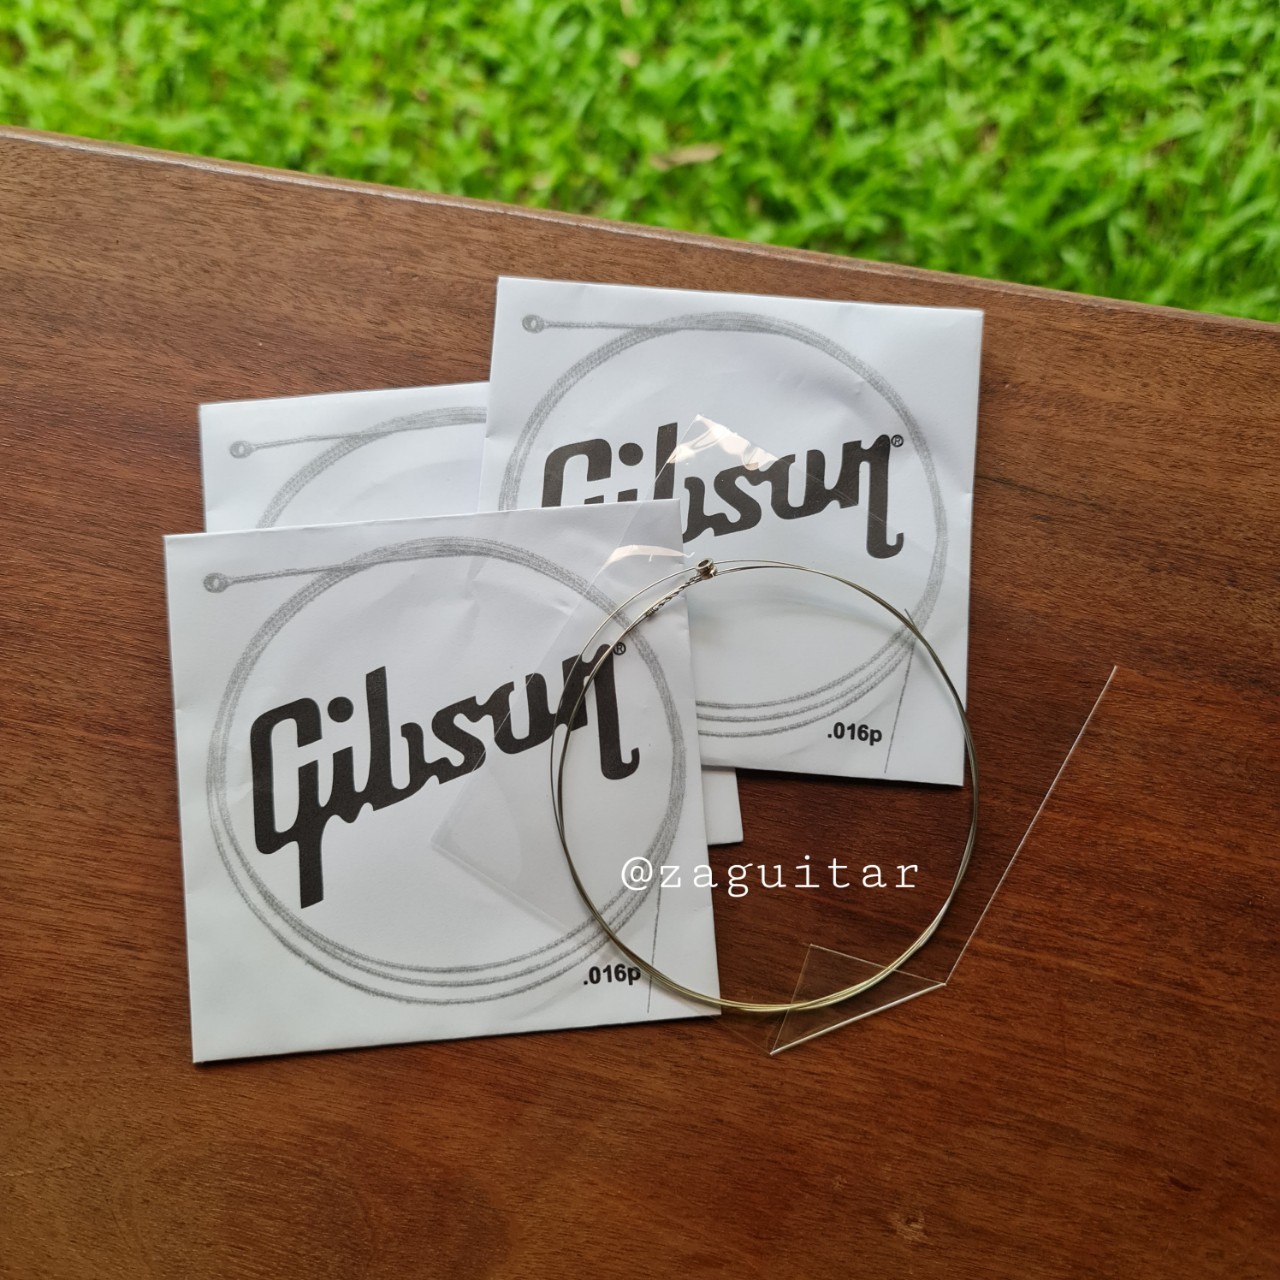 สาย Gibson ขายแยก 1 เส้น  โปร่ง/ไฟฟ้า สายที่ 1-3 พร้อมส่งเก็บปลายทาง สี สายไฟฟ้า เส้นที่ 2= 0.011p สี สายไฟฟ้า เส้นที่ 2= 0.011p